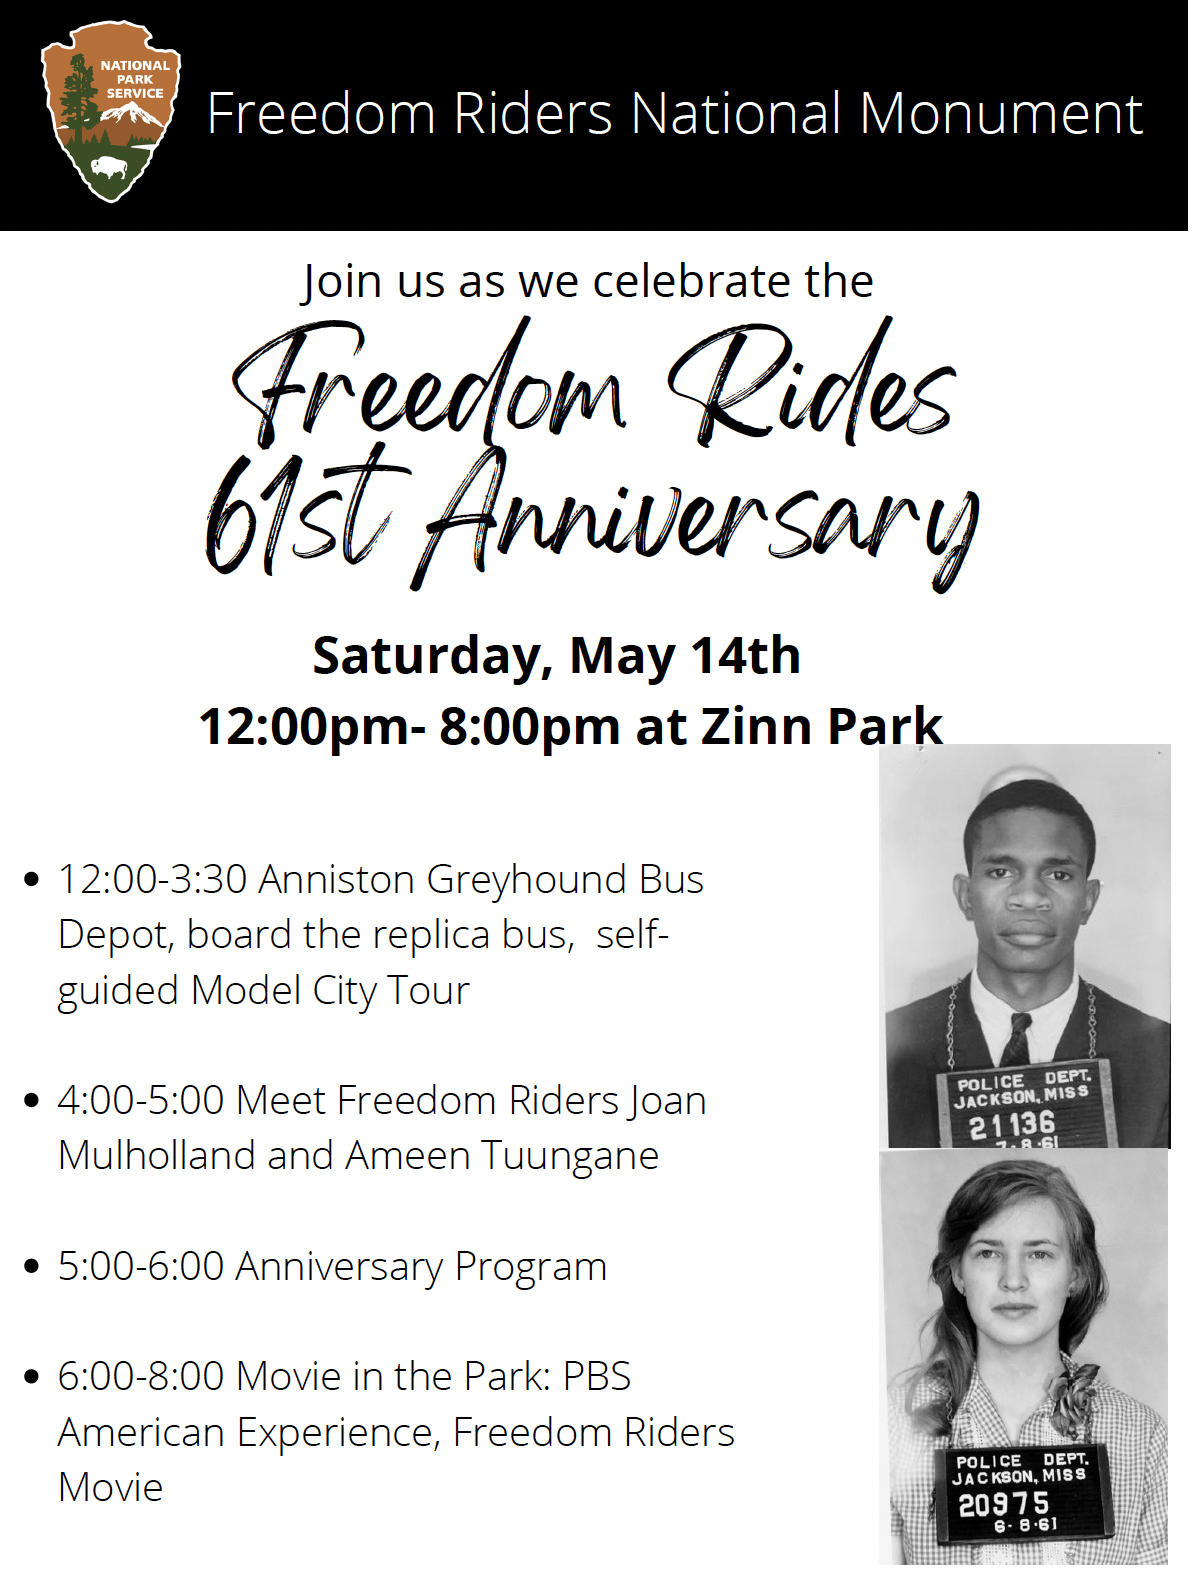 Freedom Riders Anniversary